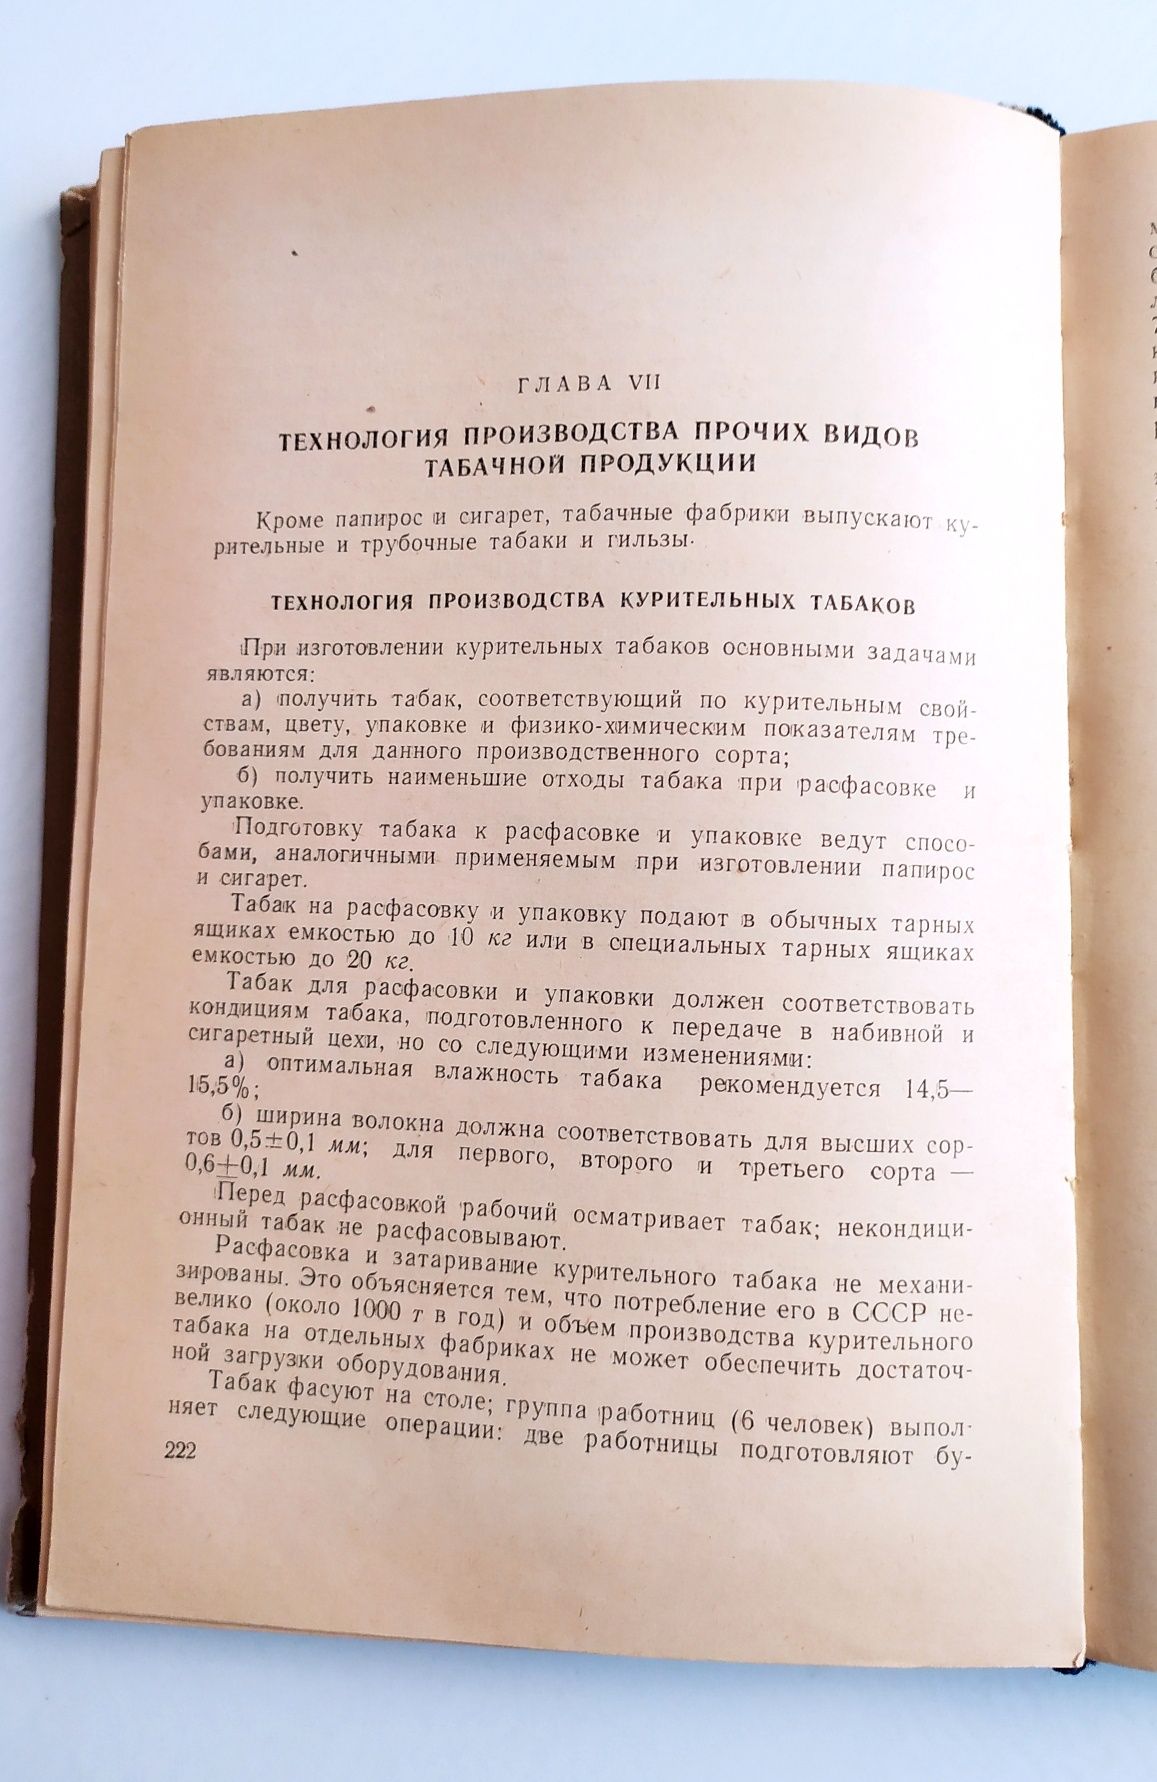 ТАБАЧНАЯ Технология ТАБАКА производство табачных изделий в СССР